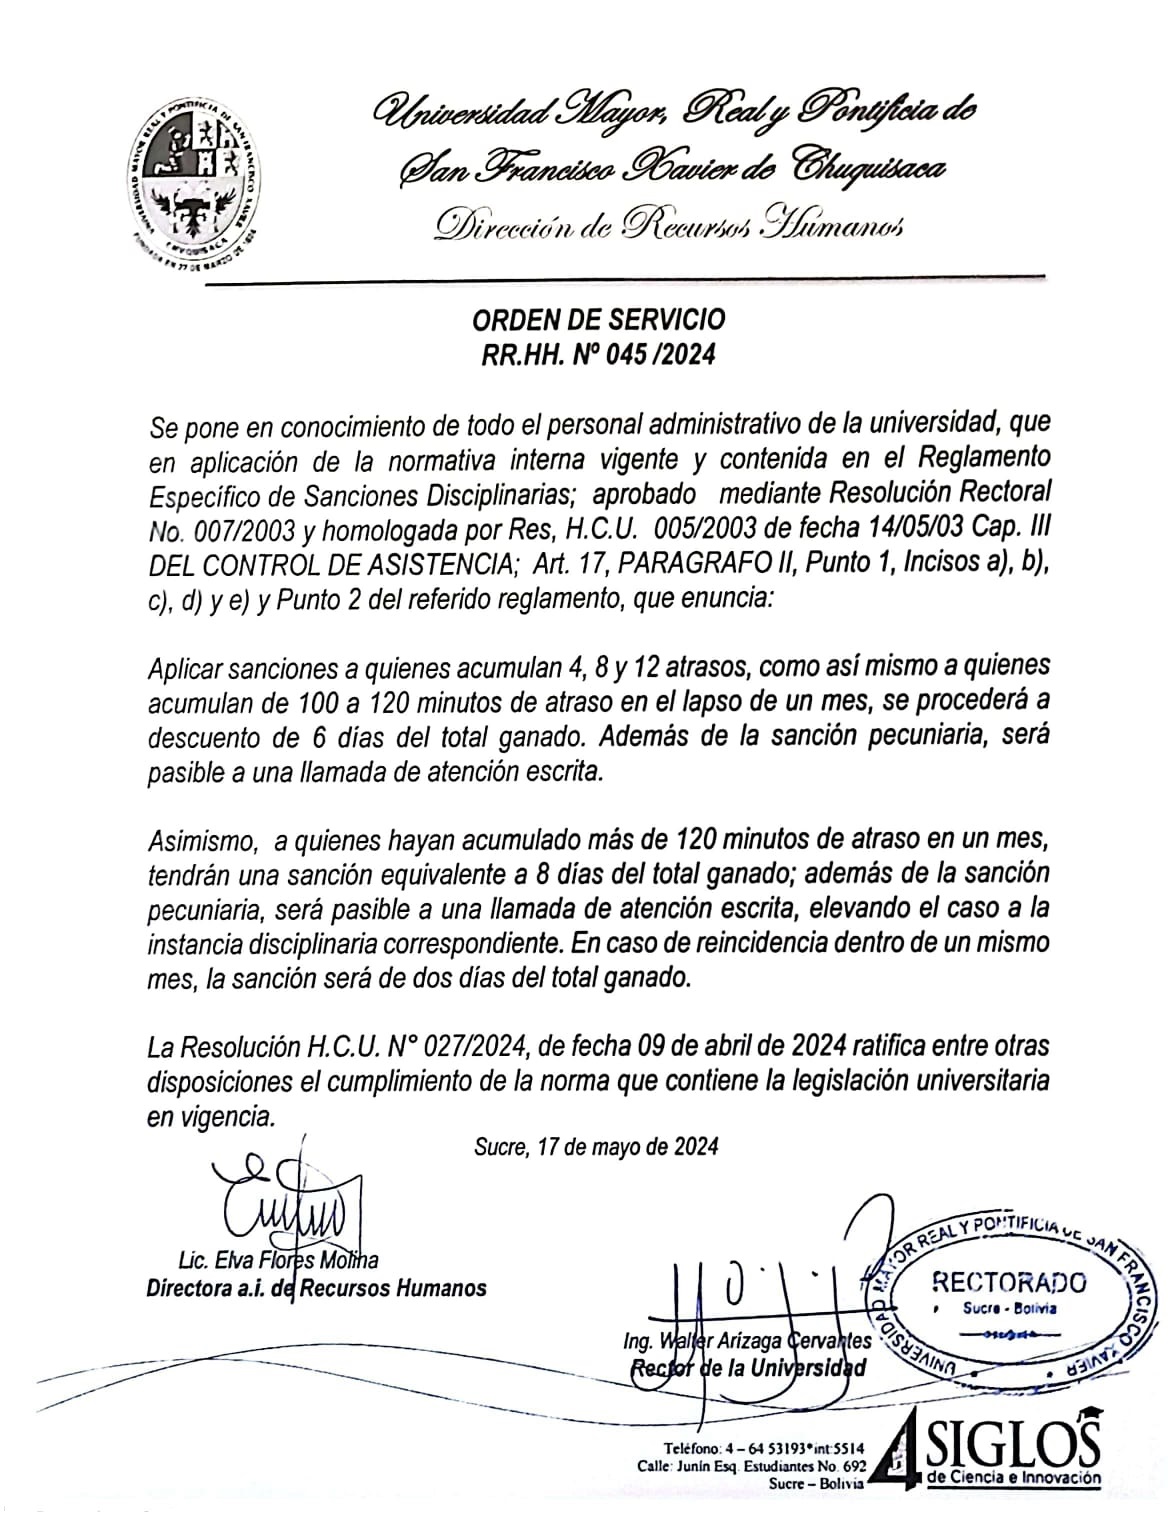 ORDEN DE SERVICIO RR.HH. Nº 045/2024, REGLAMENTO ESPECIFICO DE SANCIONES DISCIPLINARIAS.